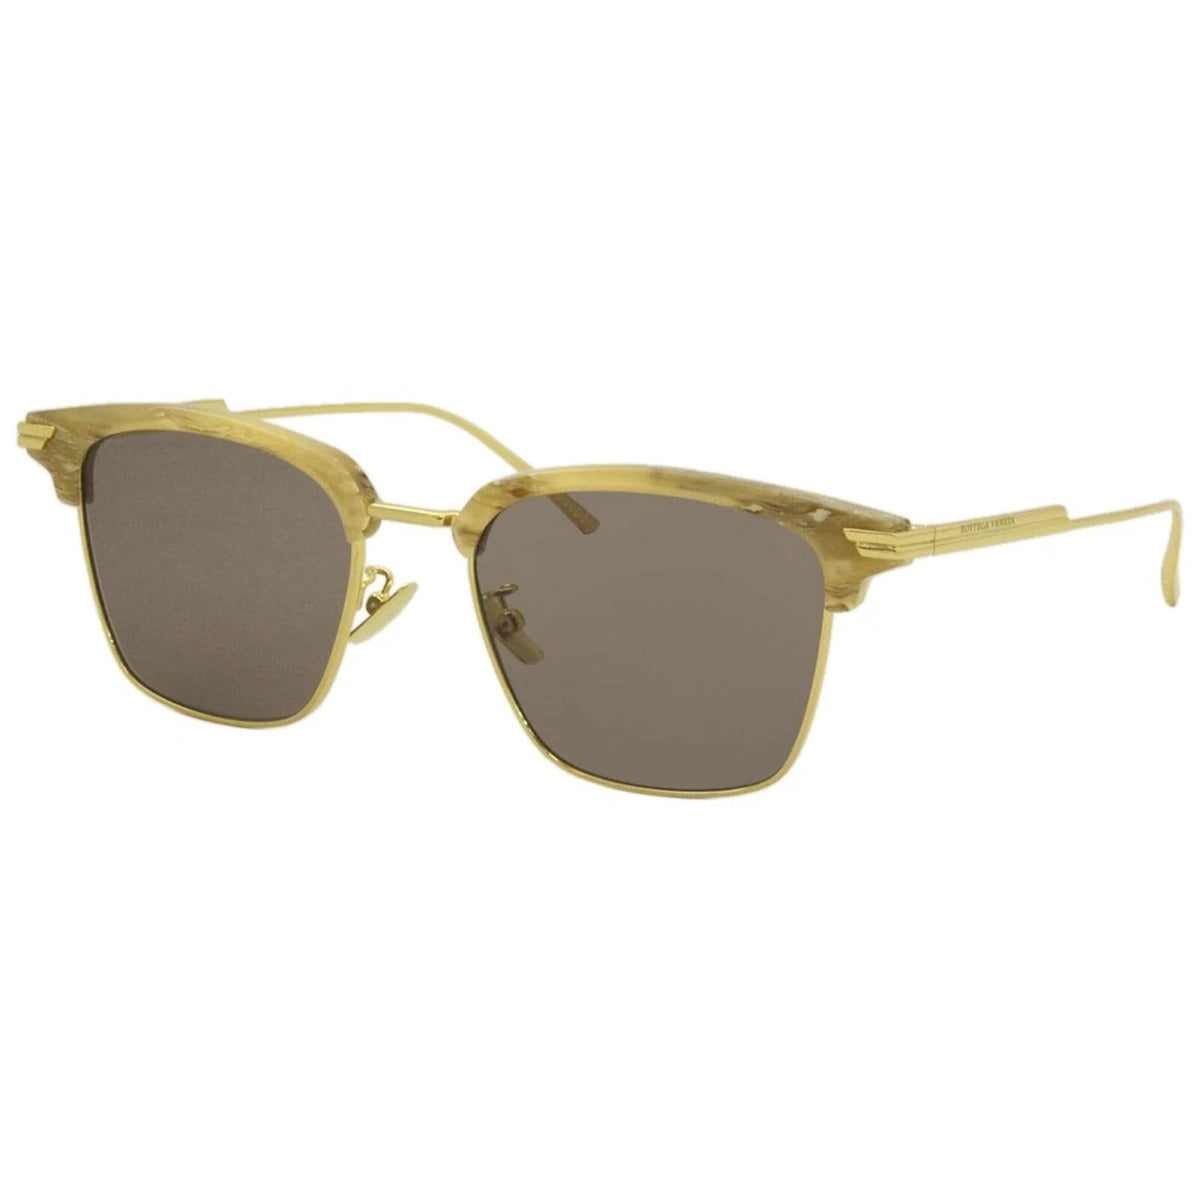 Bottega Veneta Men&#39;s Sunglasses Fall Winter 2019 Beige Brown CR 39 CR 39 Shiny BV1007SK 005